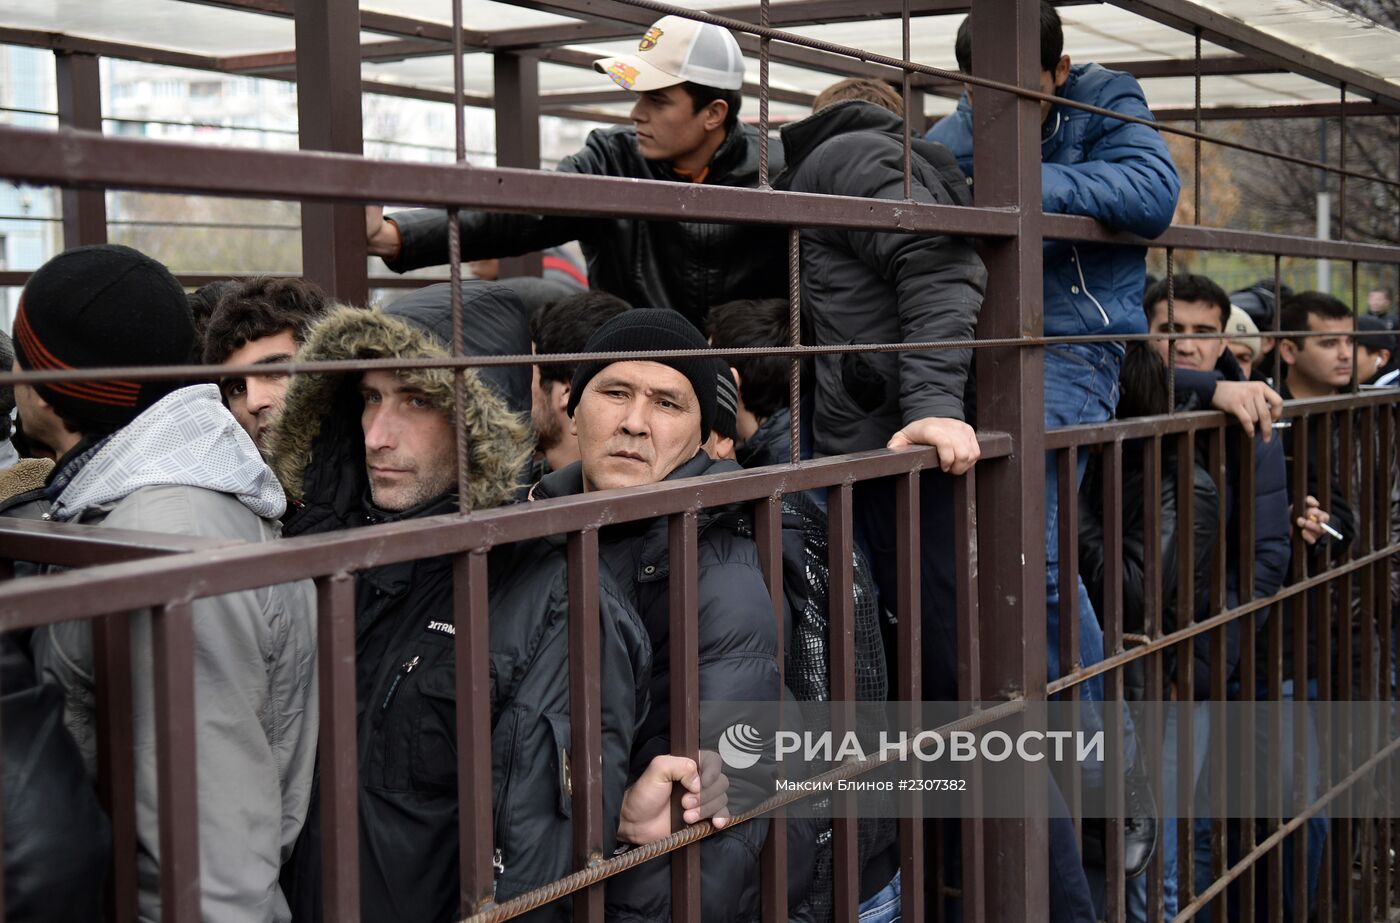 Очереди мигрантов у отделения УФМС по Москве